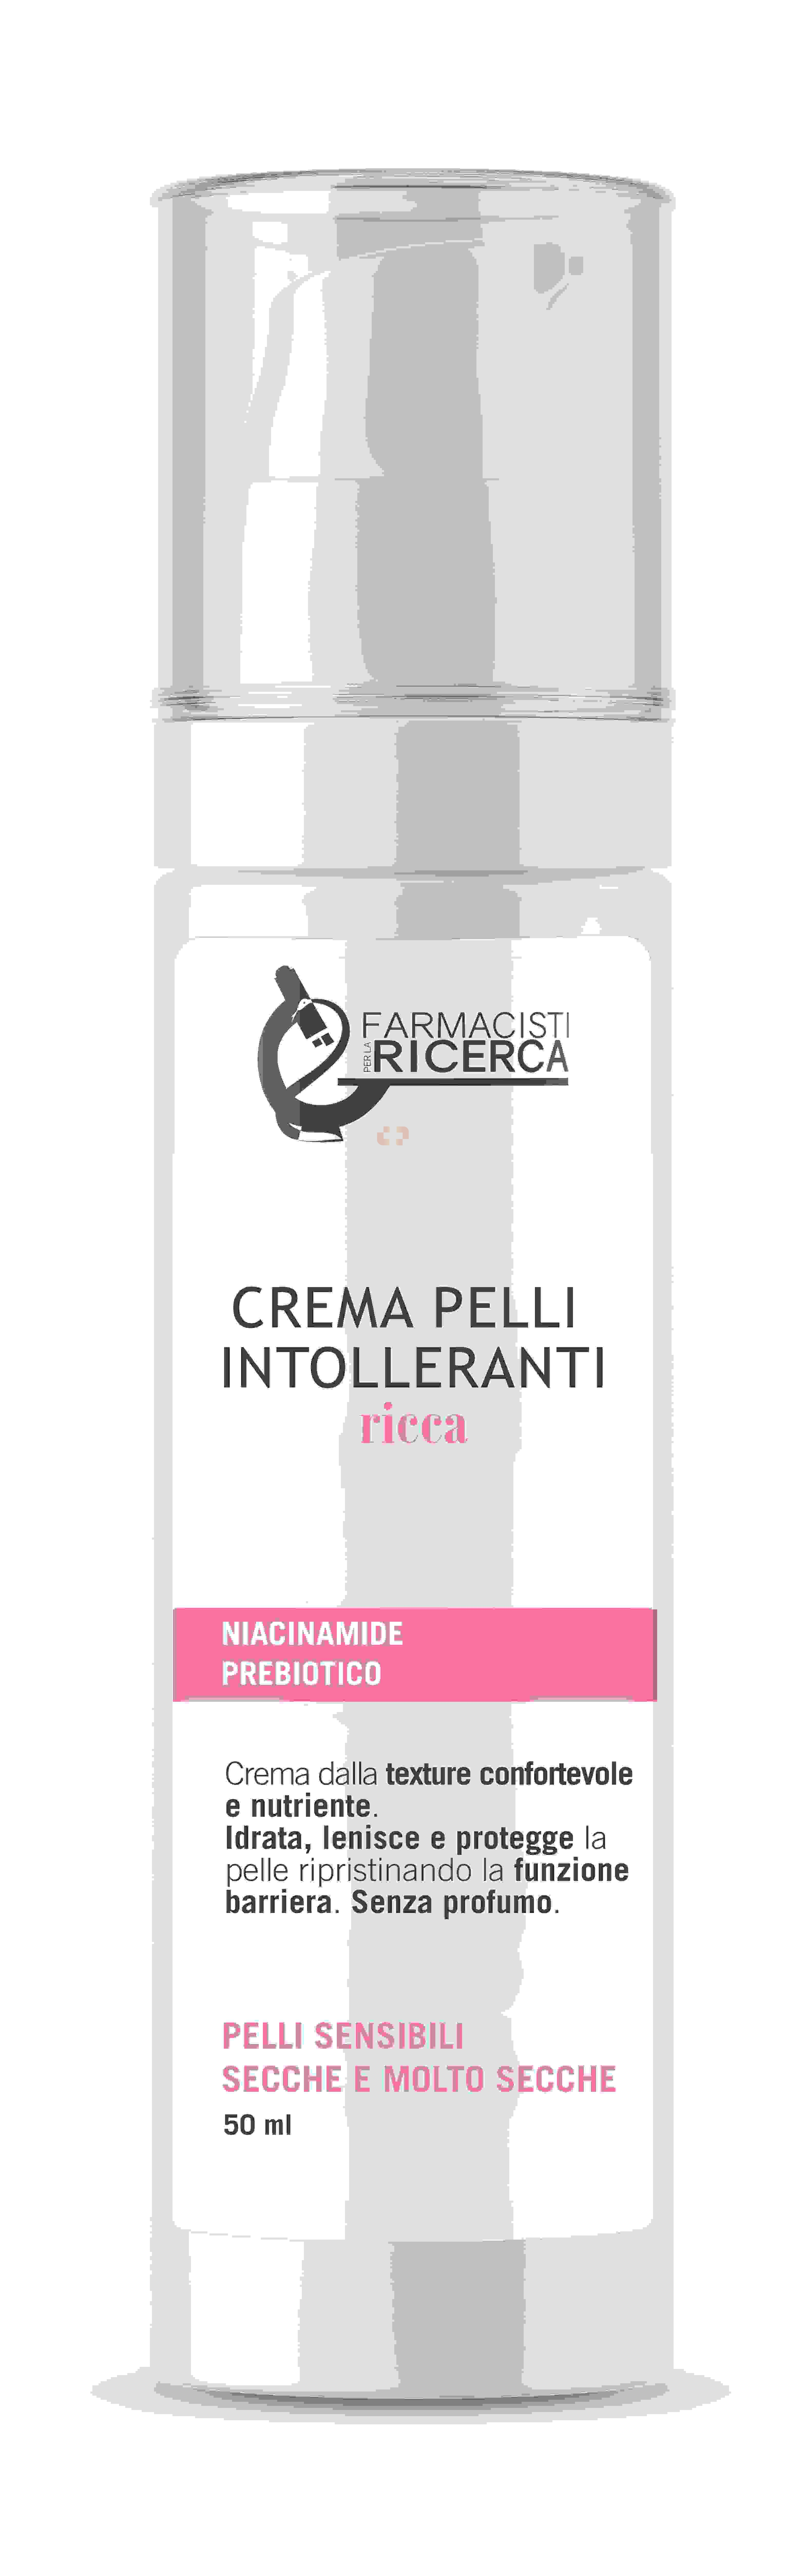 Farmacia Brescia/Fpr Crema Pelli Intoller Ricca